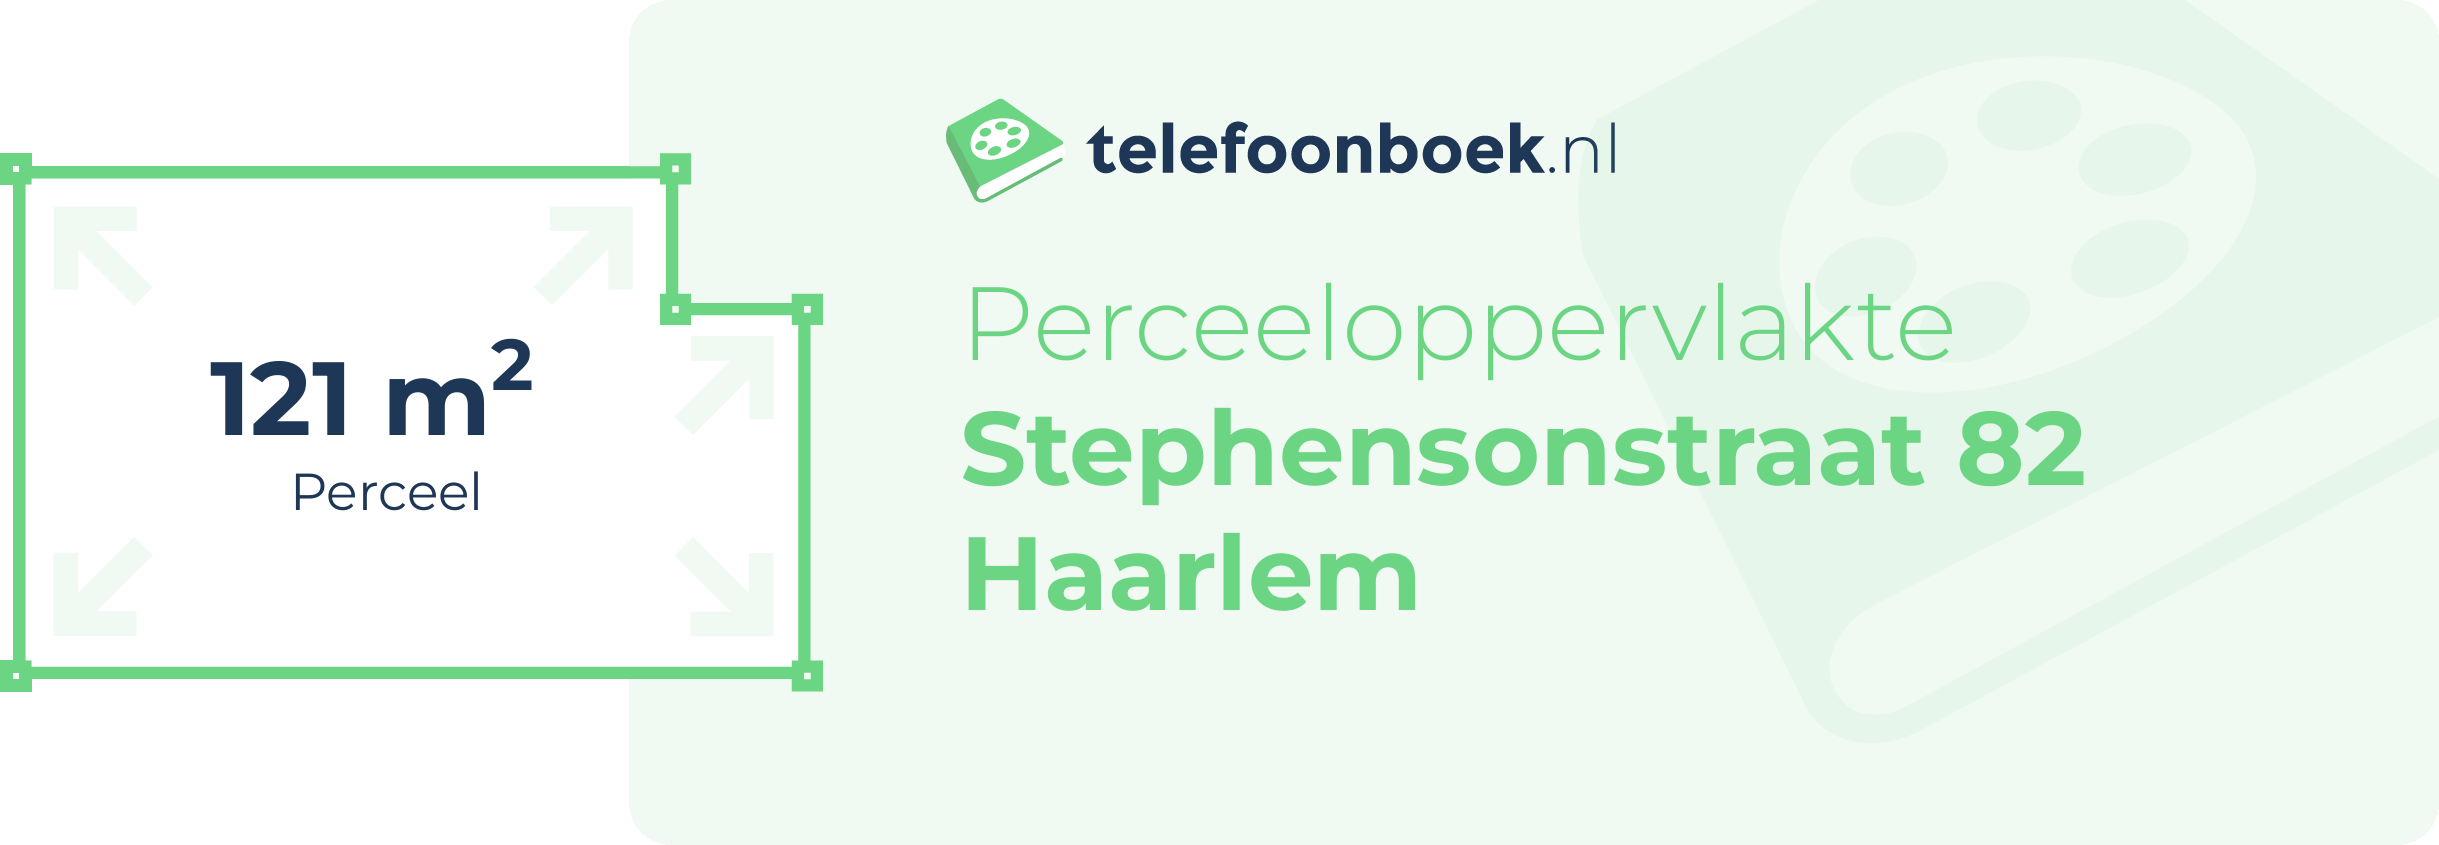 Perceeloppervlakte Stephensonstraat 82 Haarlem